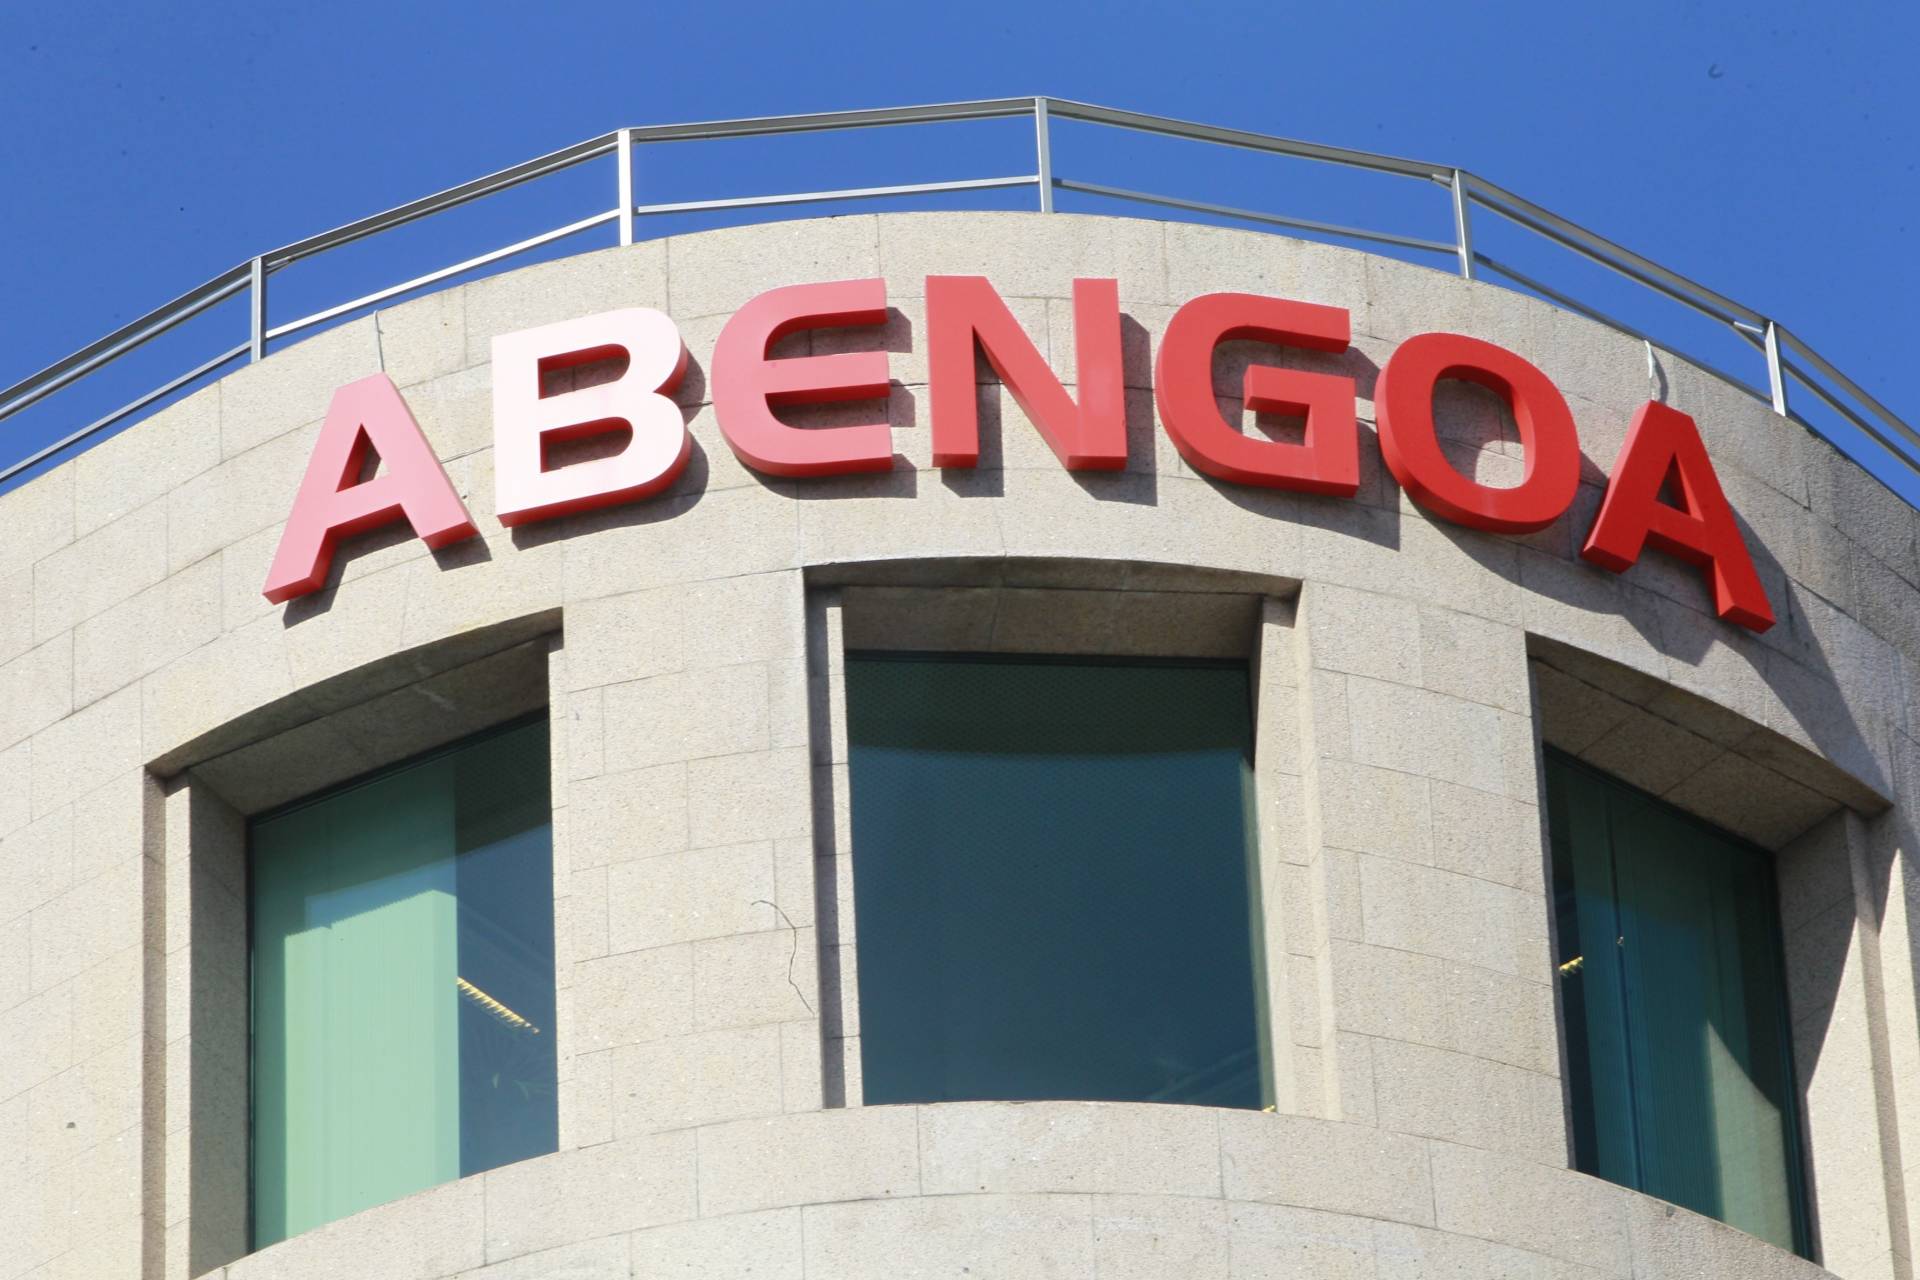 La Audiencia Nacional imputa a Abengoa y Deloitte por presunta falsedad en sus cuentas